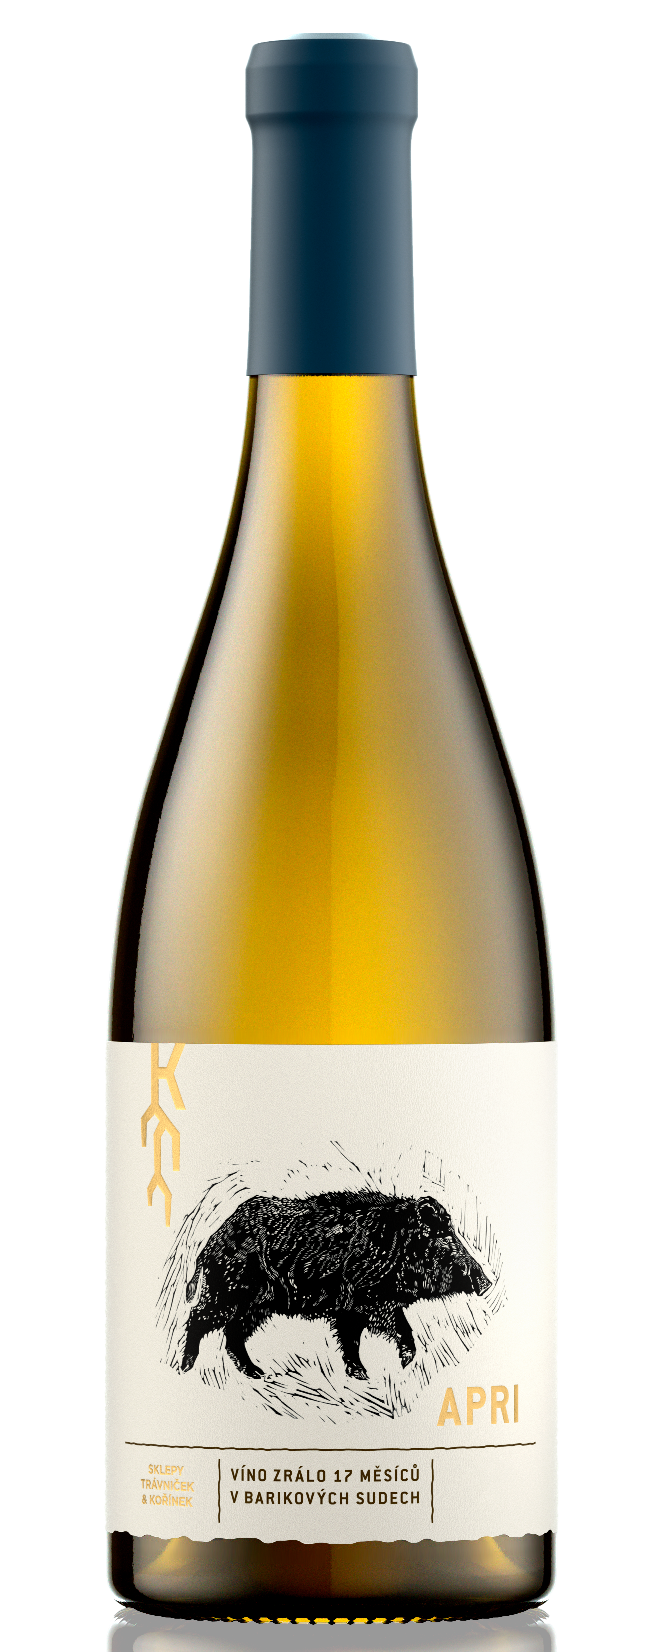 Apri Chardonnay 2016, suché, Vinařství Trávníček & Kořínek